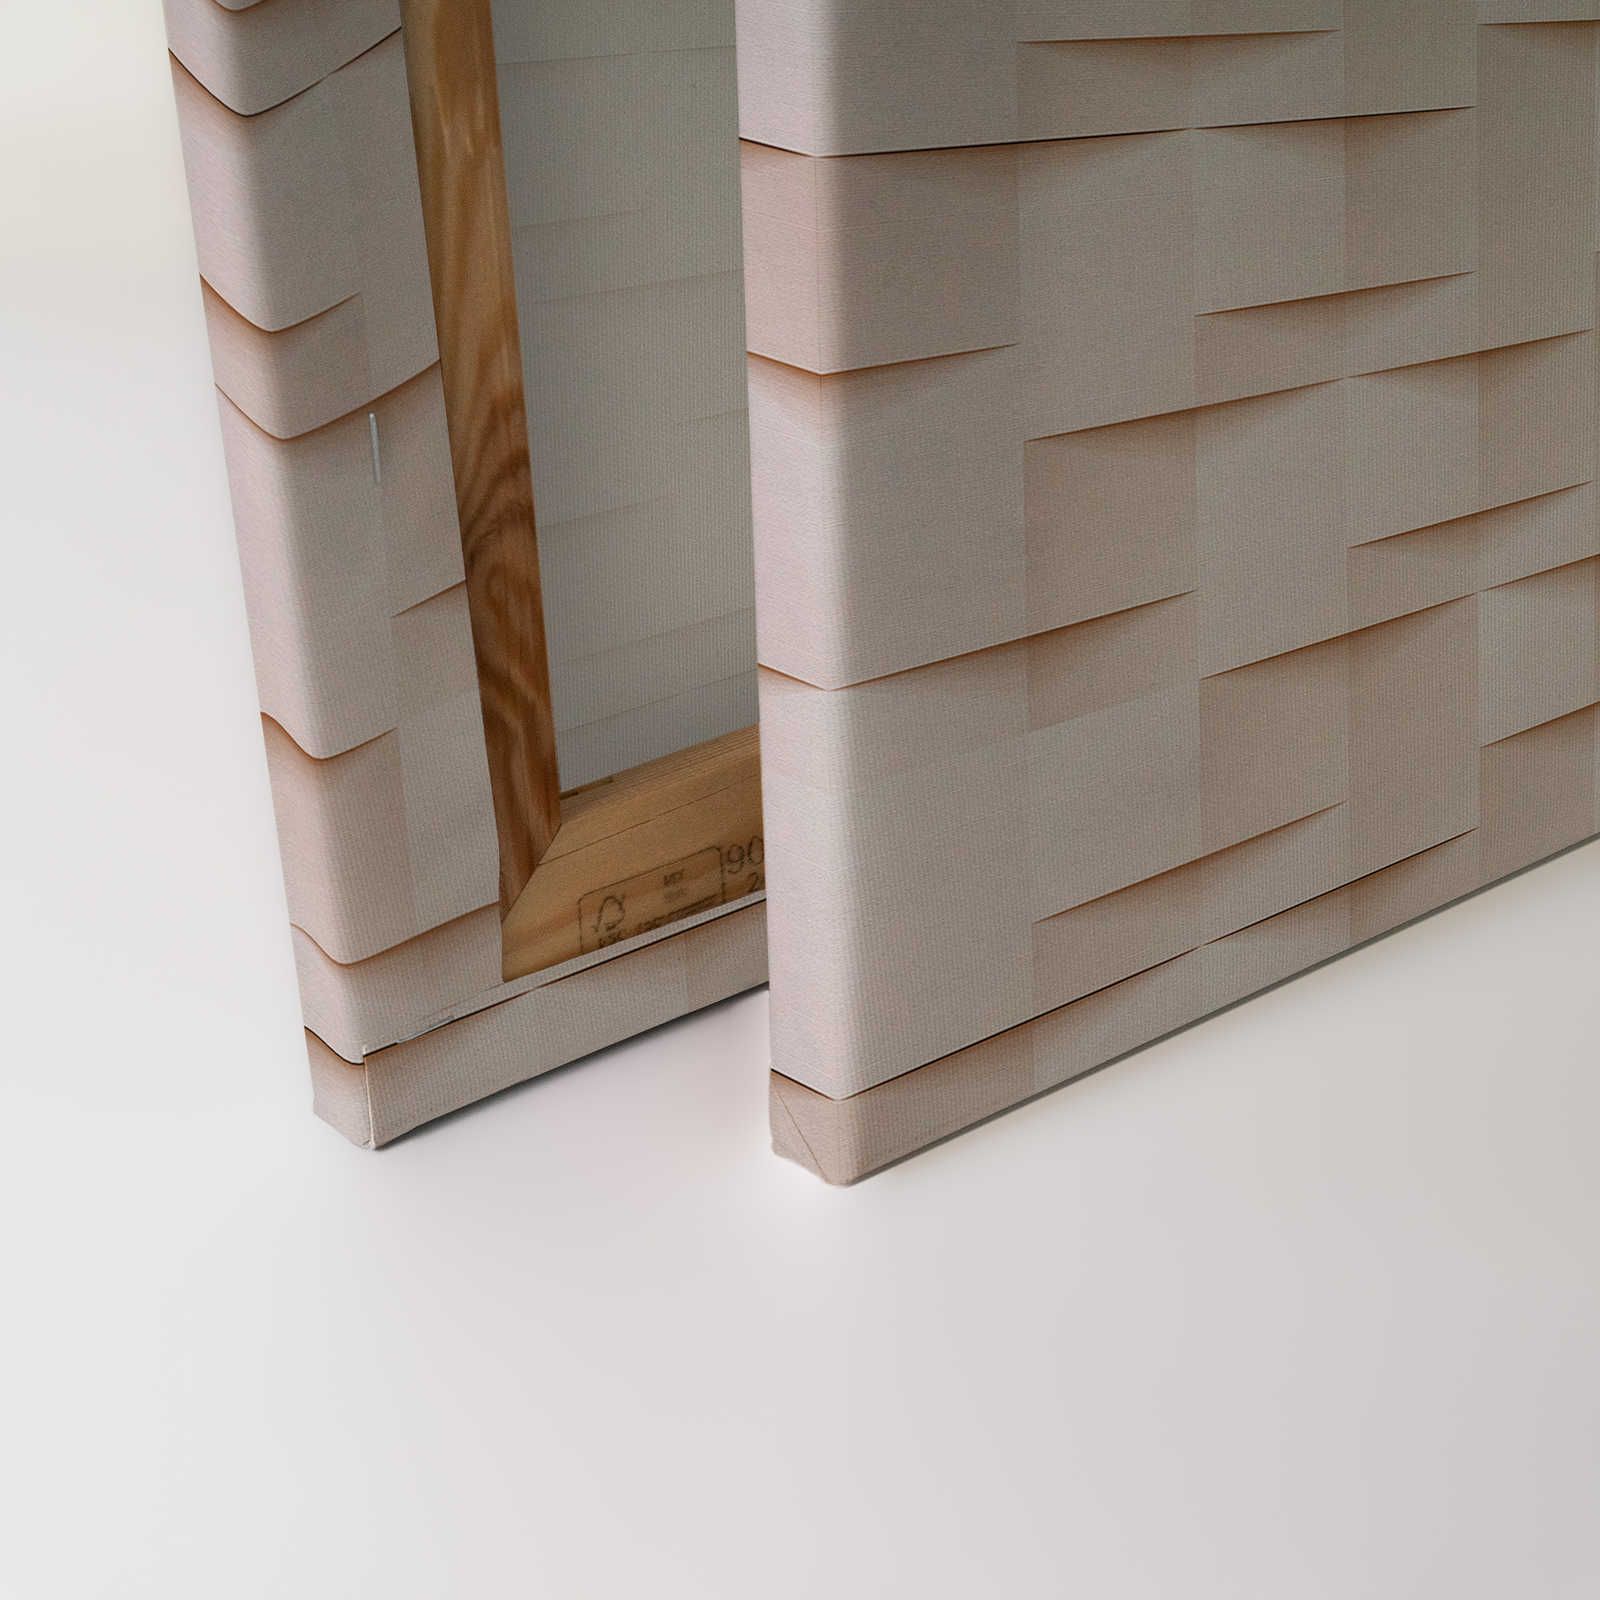             Paper House 1 - Canvas schilderij 3D structuur papier origami vouwen - 0,90 m x 0,60 m
        